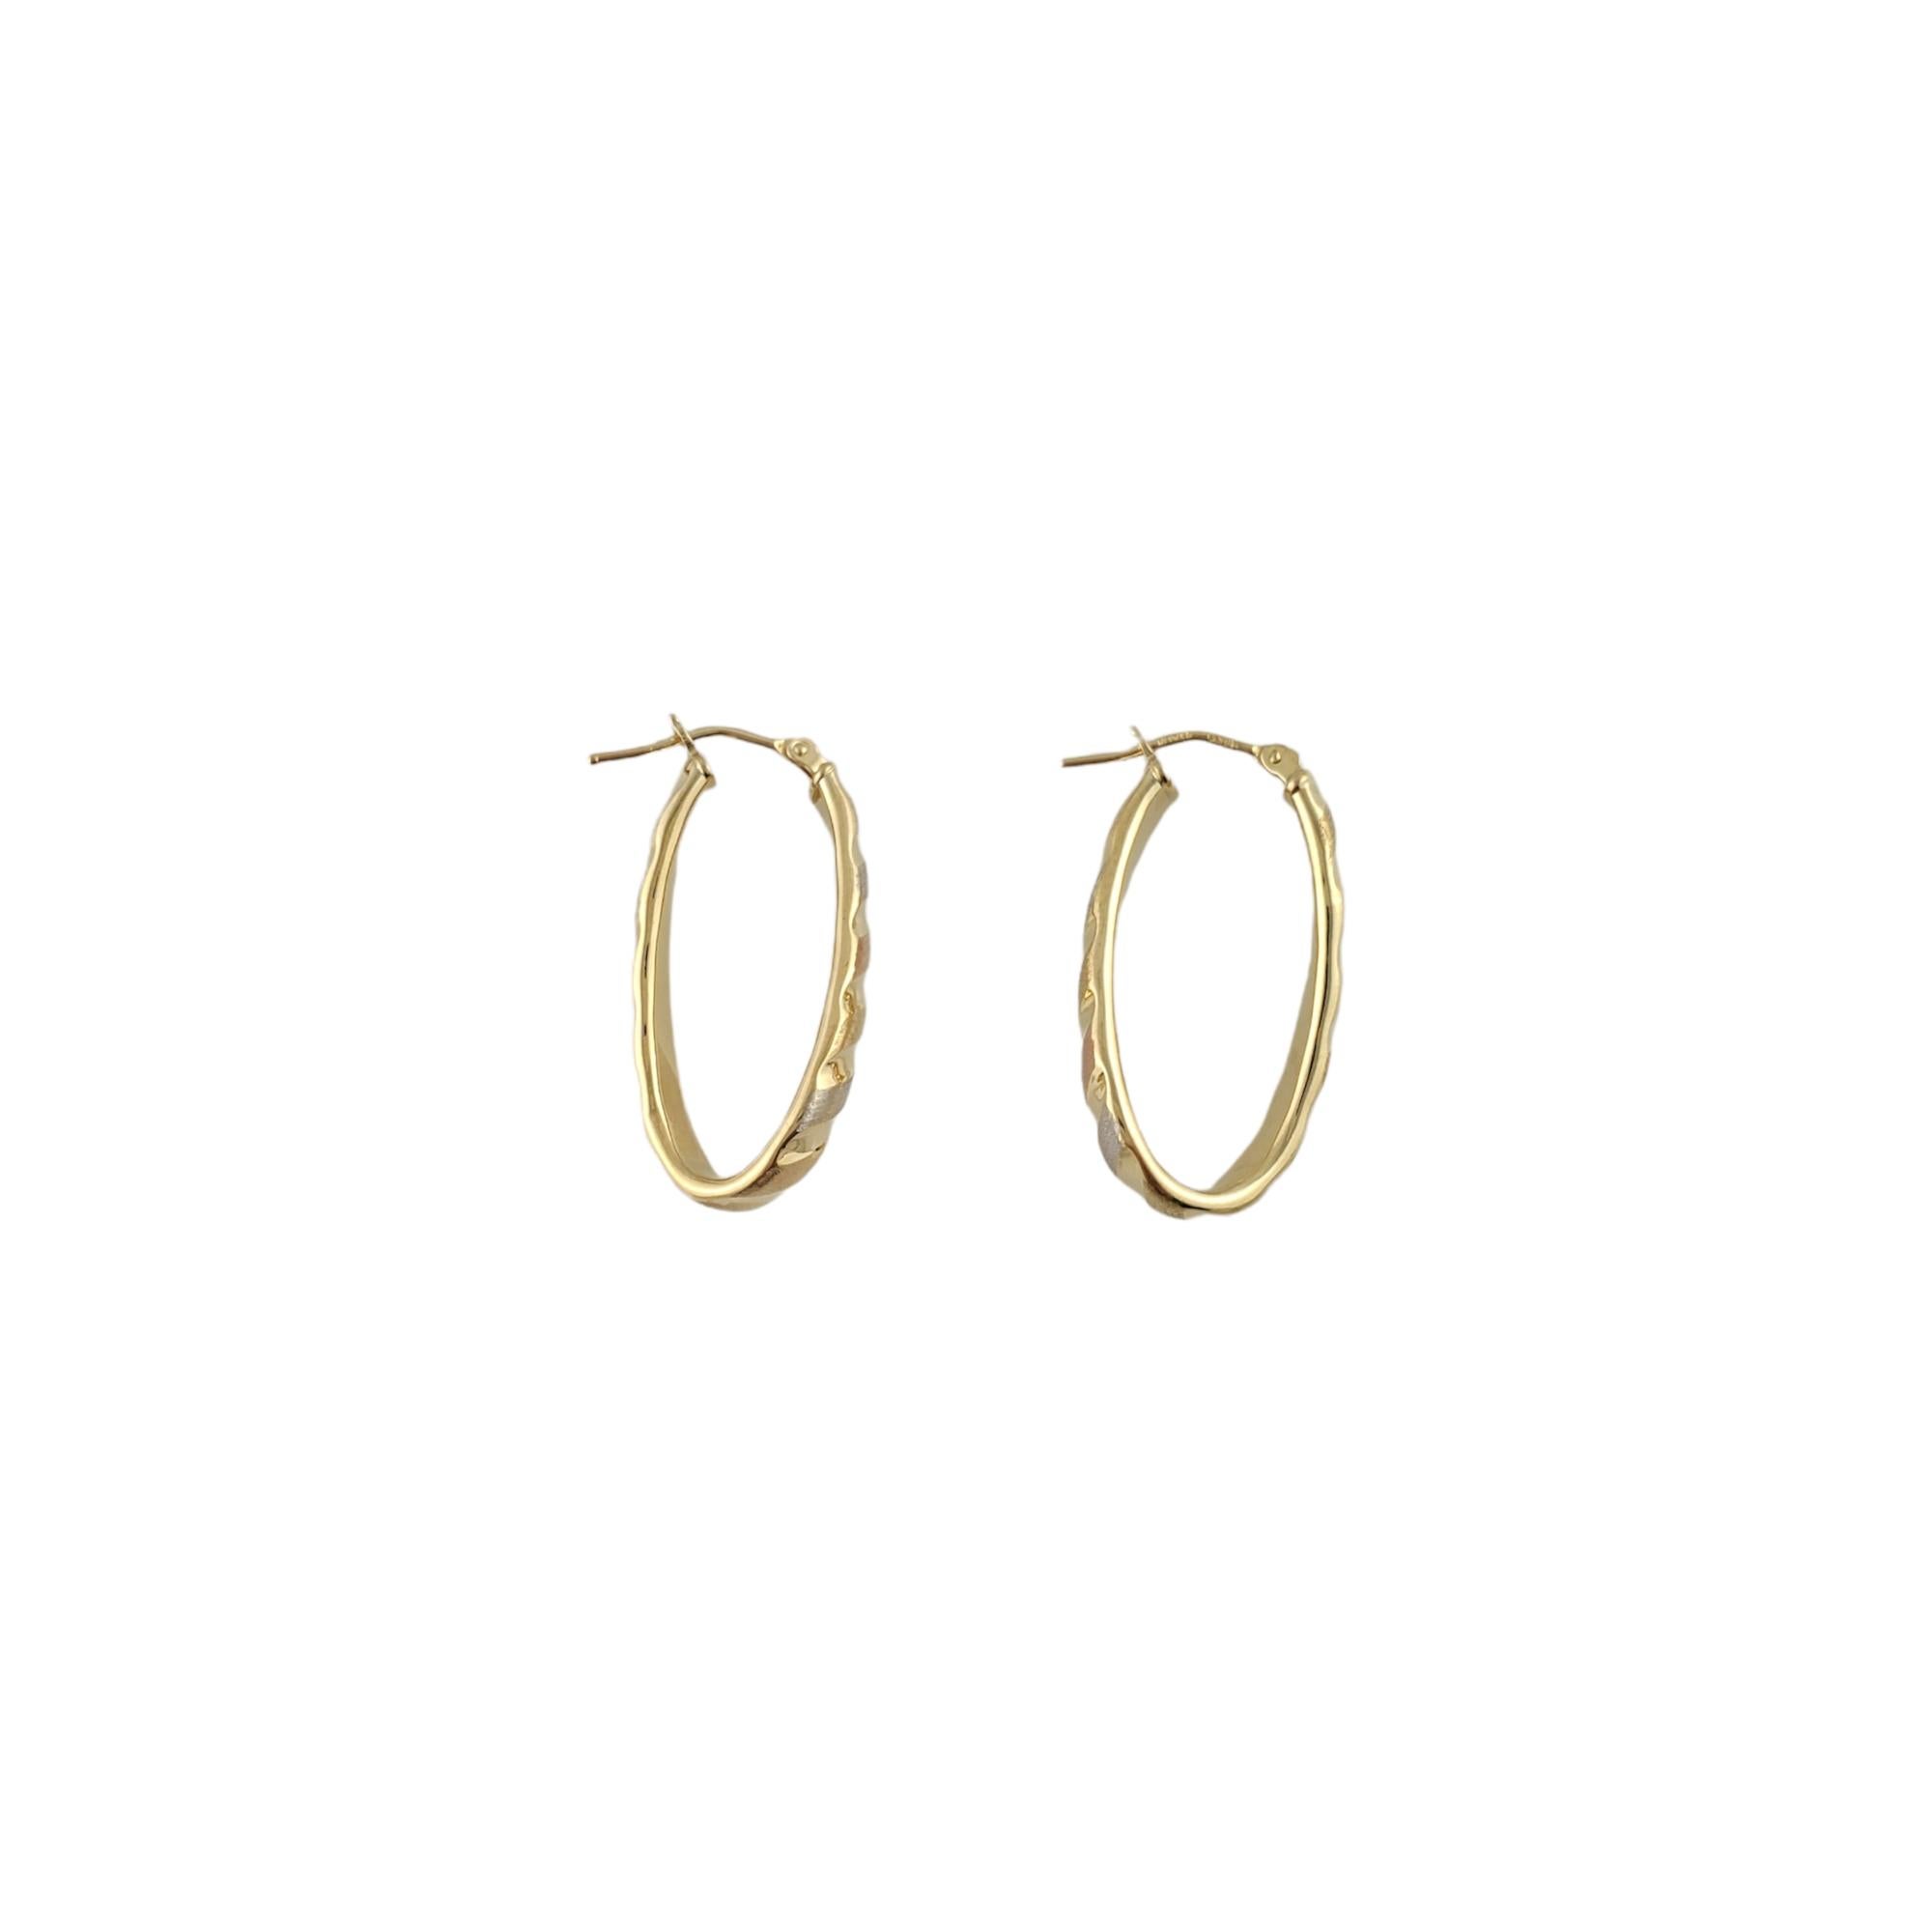 18K Tri Color Gold Längliche Ohrringe

Wunderschöne, ovale, längliche Ohrringe mit einer leichten Drehung in der Form. Gefertigt aus 18-karätigem Gold, mit Anklängen an Weiß-, Gelb- und Roségold. Perfekt für jede Gelegenheit.

Größe: 29,5 mm x 19,5